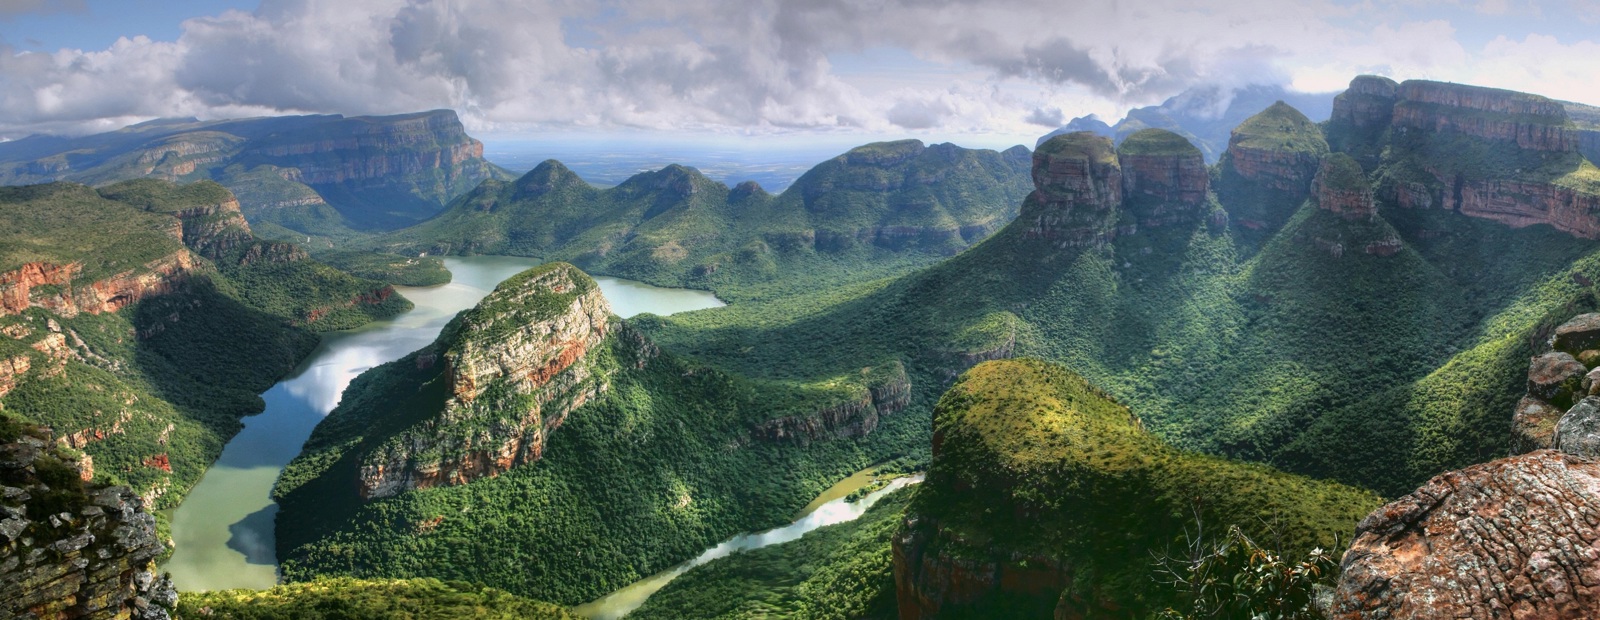 Blyde River Canyon i Mpumalanga, Sydafrika